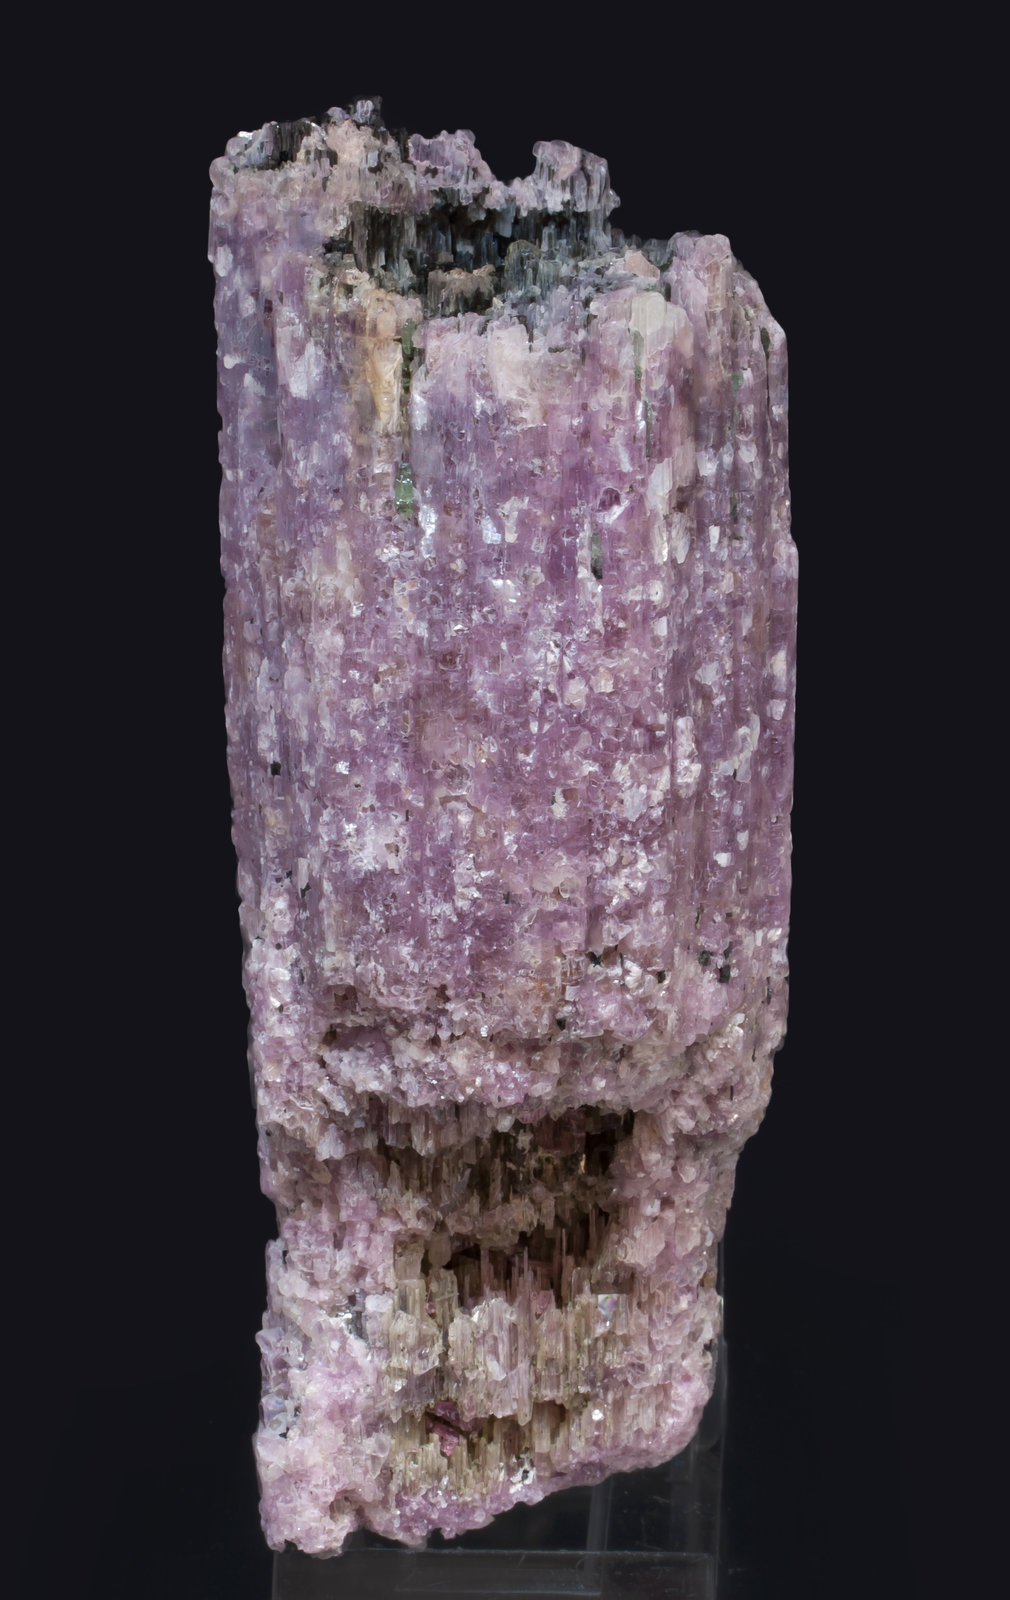 specimens/s_imagesAG3/Lepidolite-MR94AG3r.jpg